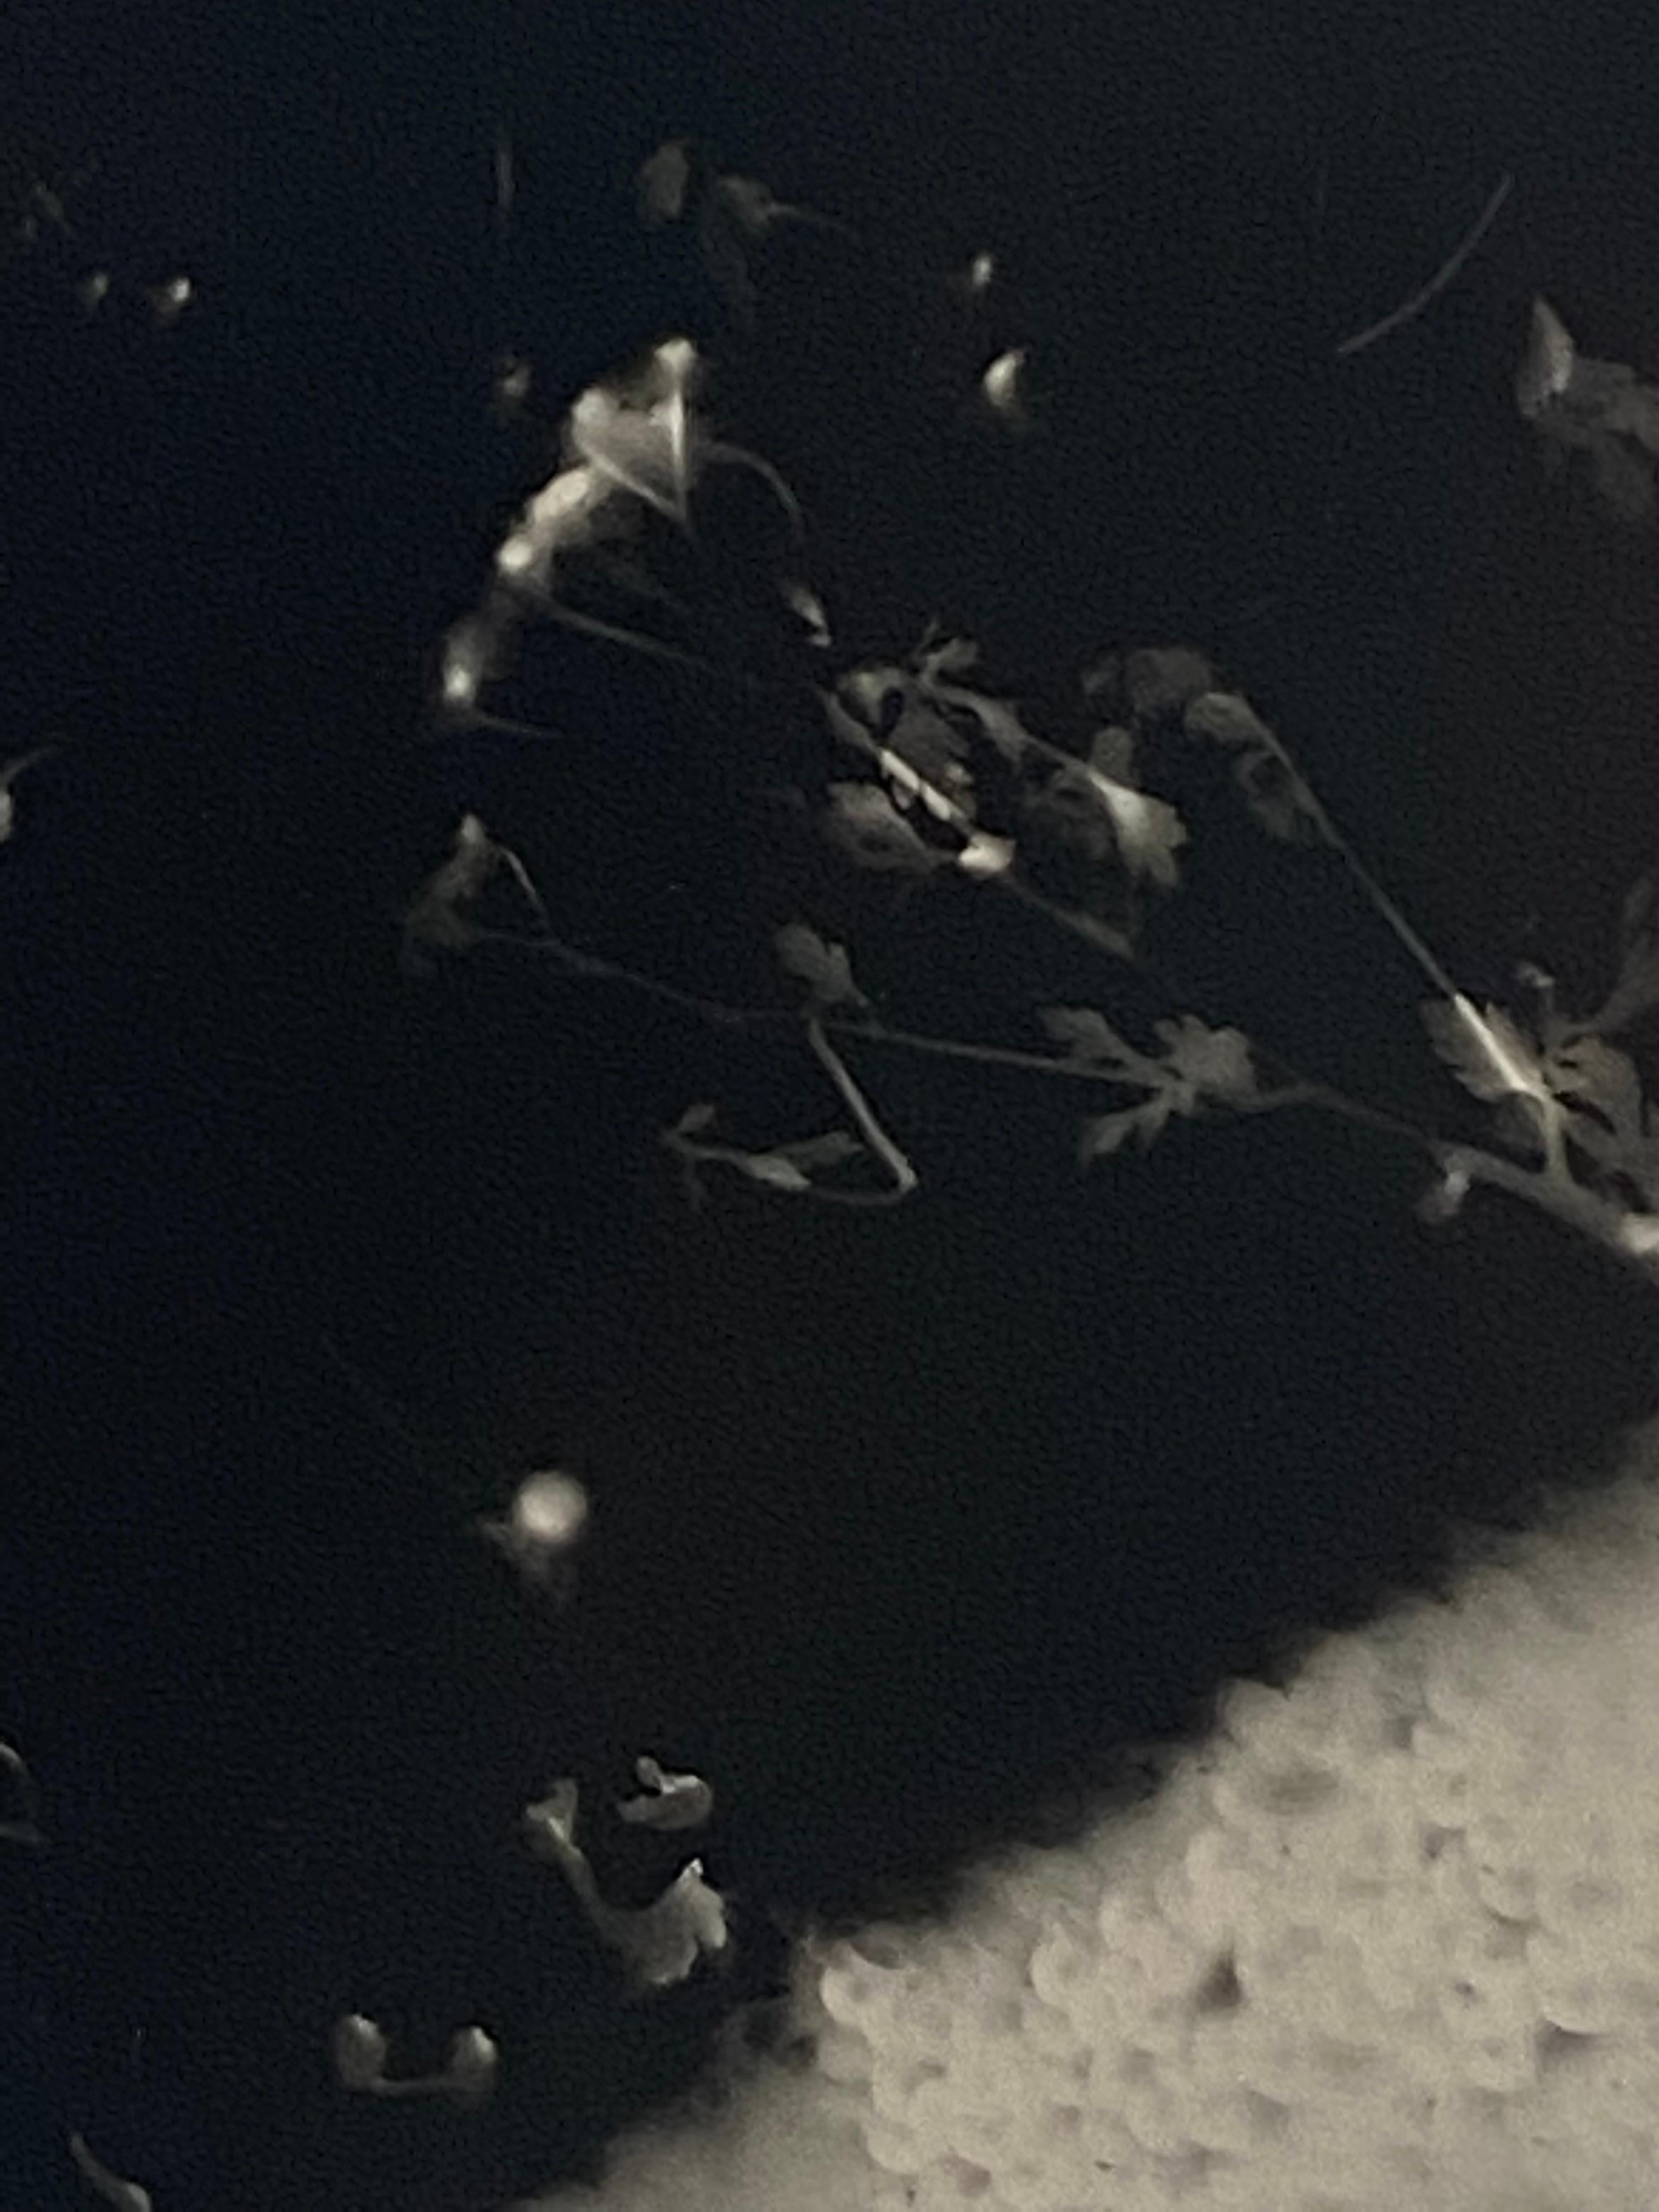 Dreaming in Sequins - einzigartiges zeitgenössisches Schwarzweiß-Fotogramm in Silbergelatine (Zeitgenössisch), Photograph, von Kimberly Schneider Photography